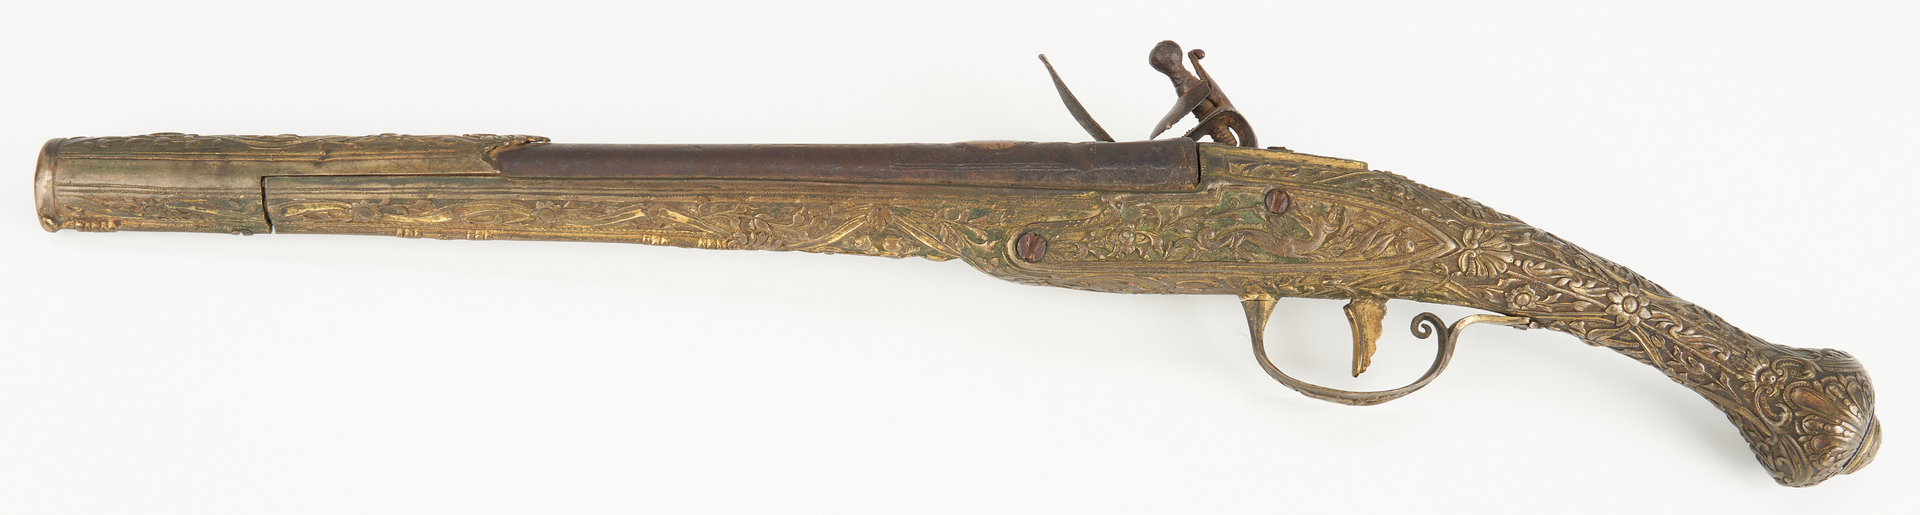 Lot 695: Turkish or Ottoman Flintlock Holster Pistol, .62 cal.